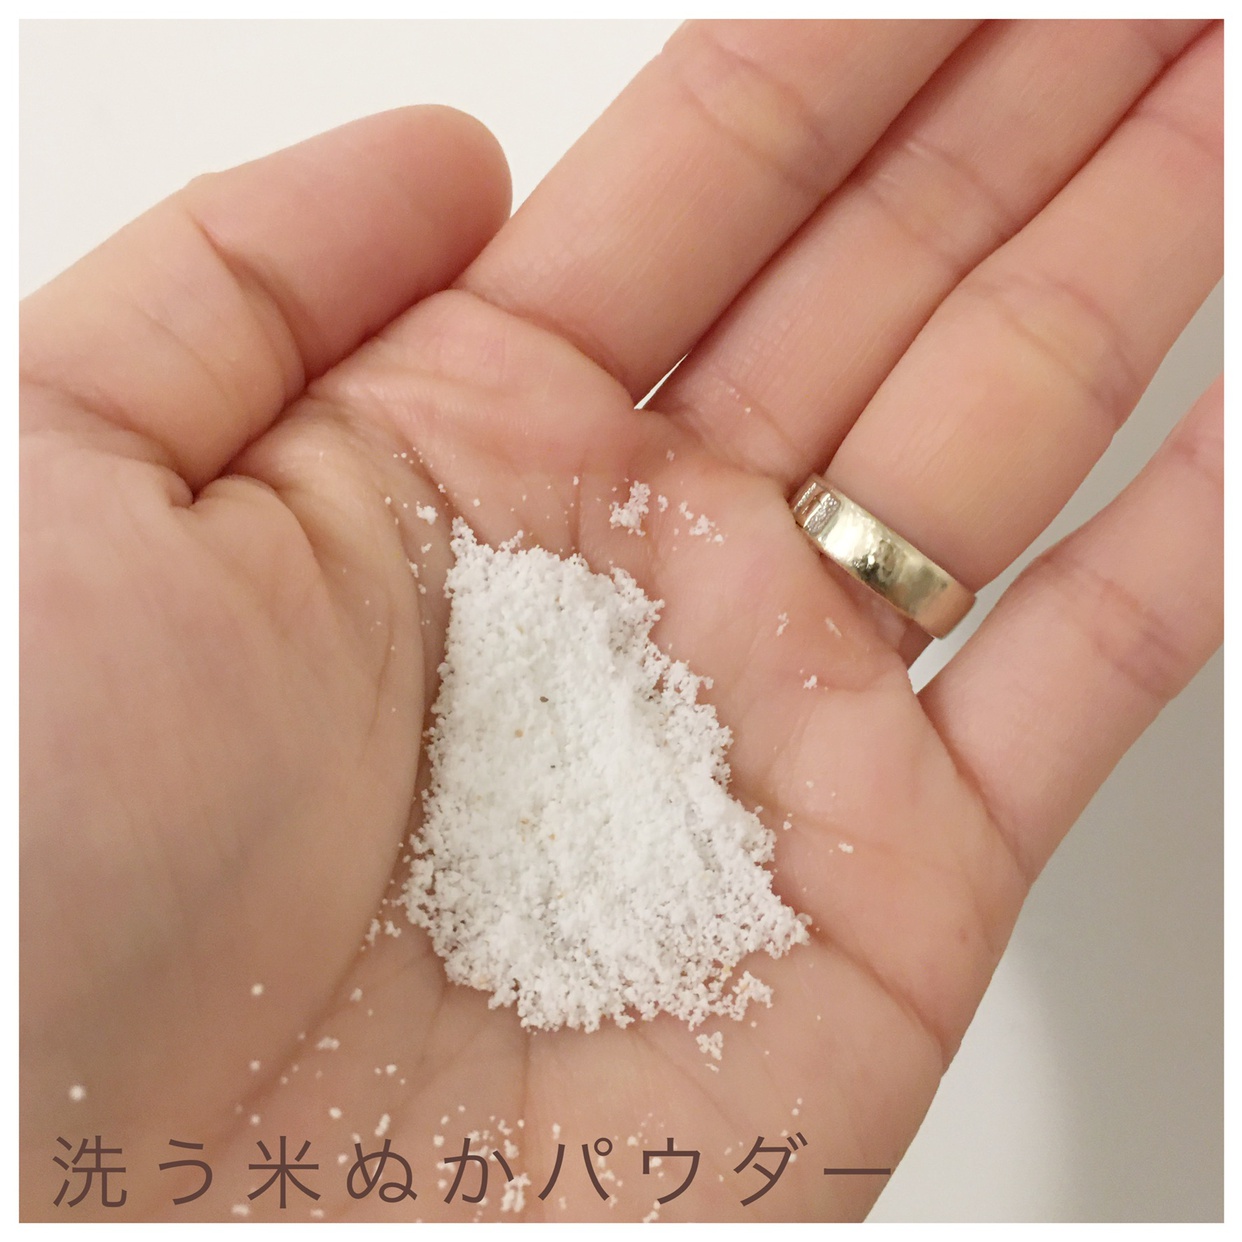 米一途(comeitto) 洗う米ぬかパウダーの良い点・メリットに関するyk_free12636さんの口コミ画像3